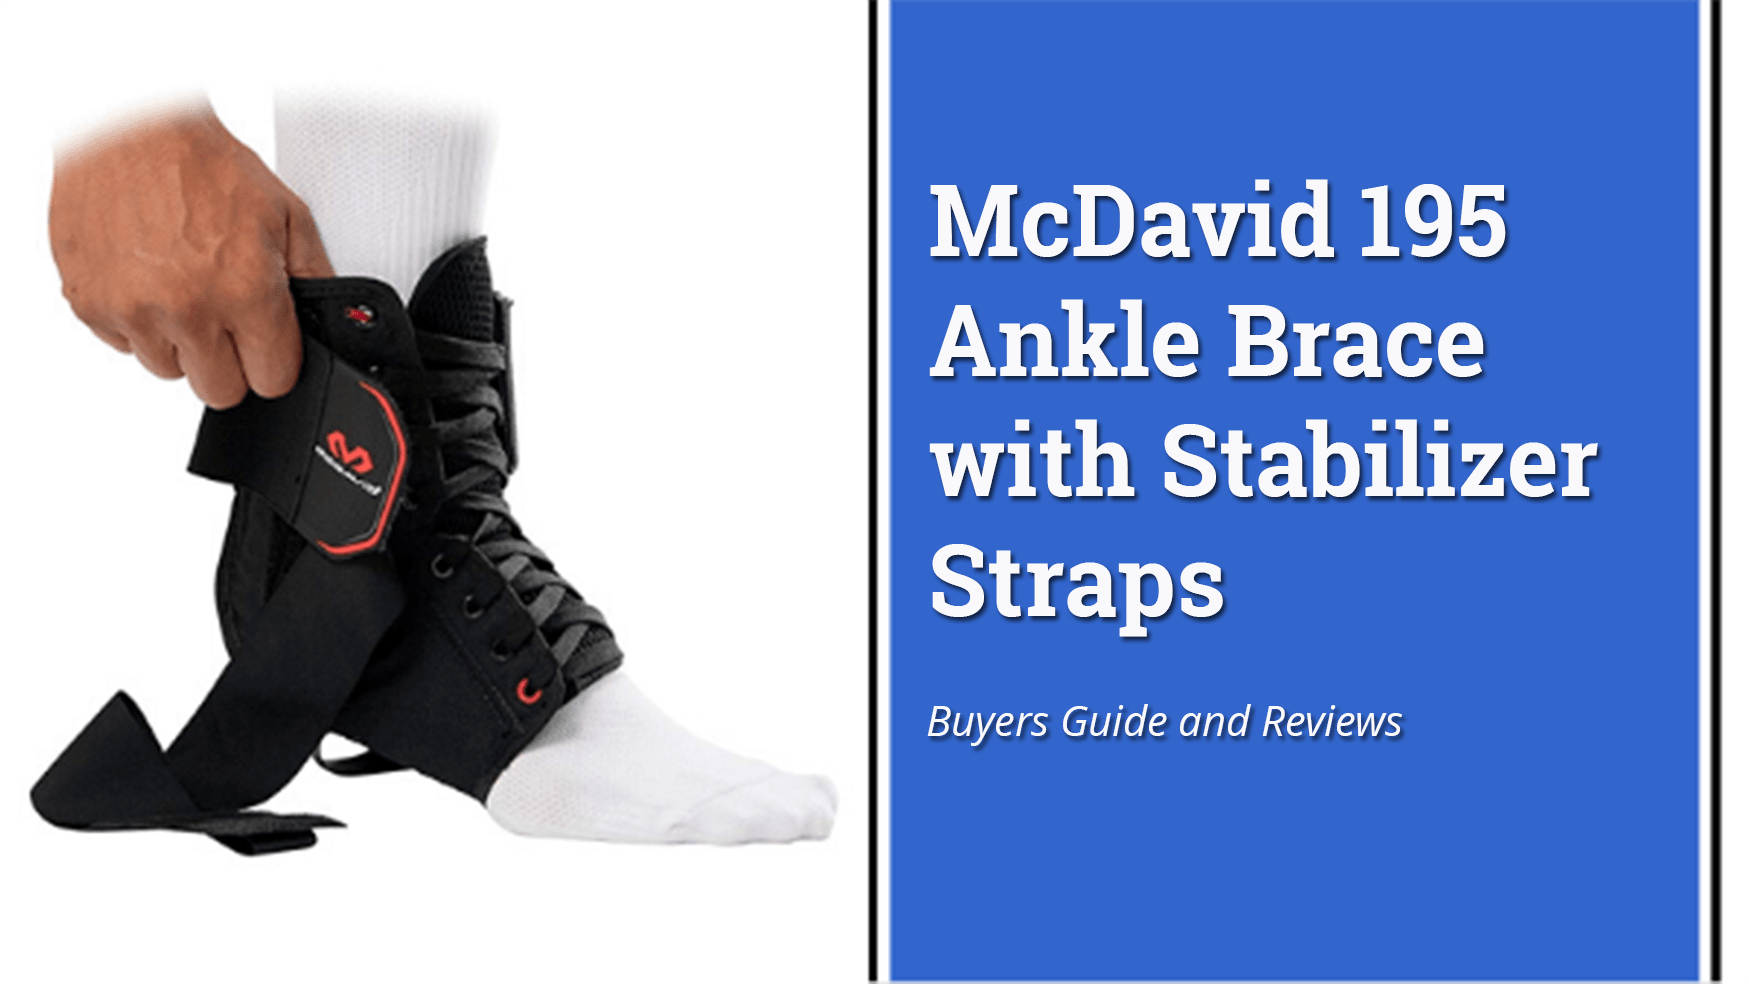 McDavid 195 Ankle Brace with Stabilizer Straps